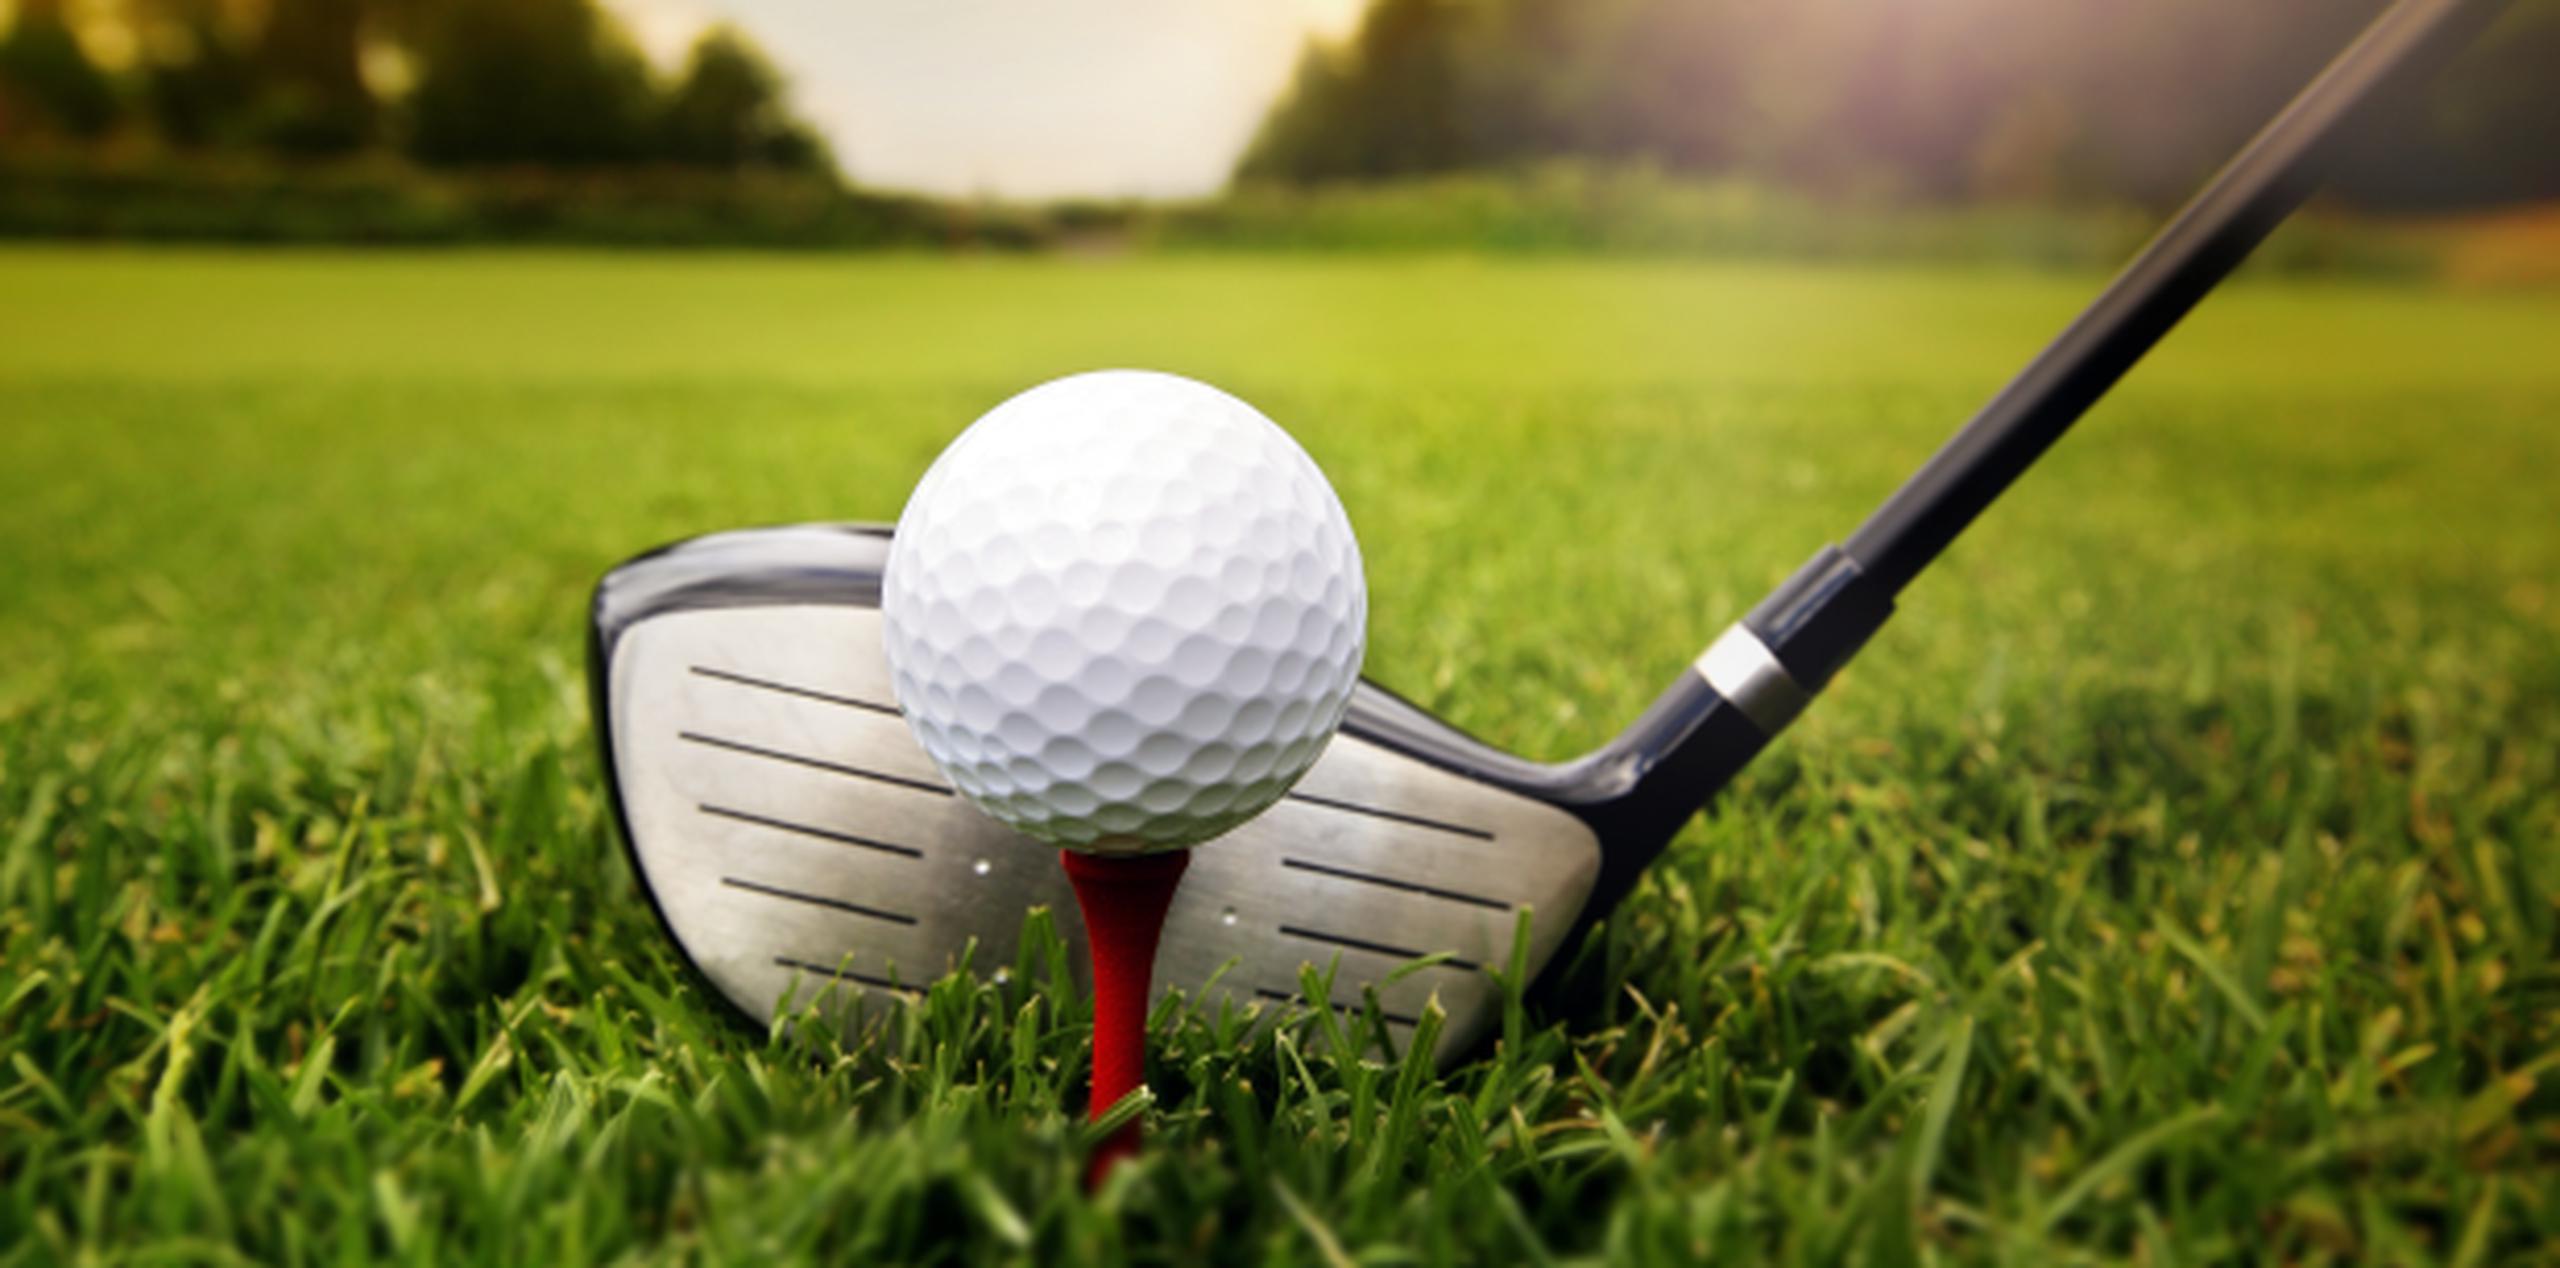 "Los caddies en el golf son las personas que están al lado de un jugador durante su travesía por los 18 hoyos". (Shutterstock)